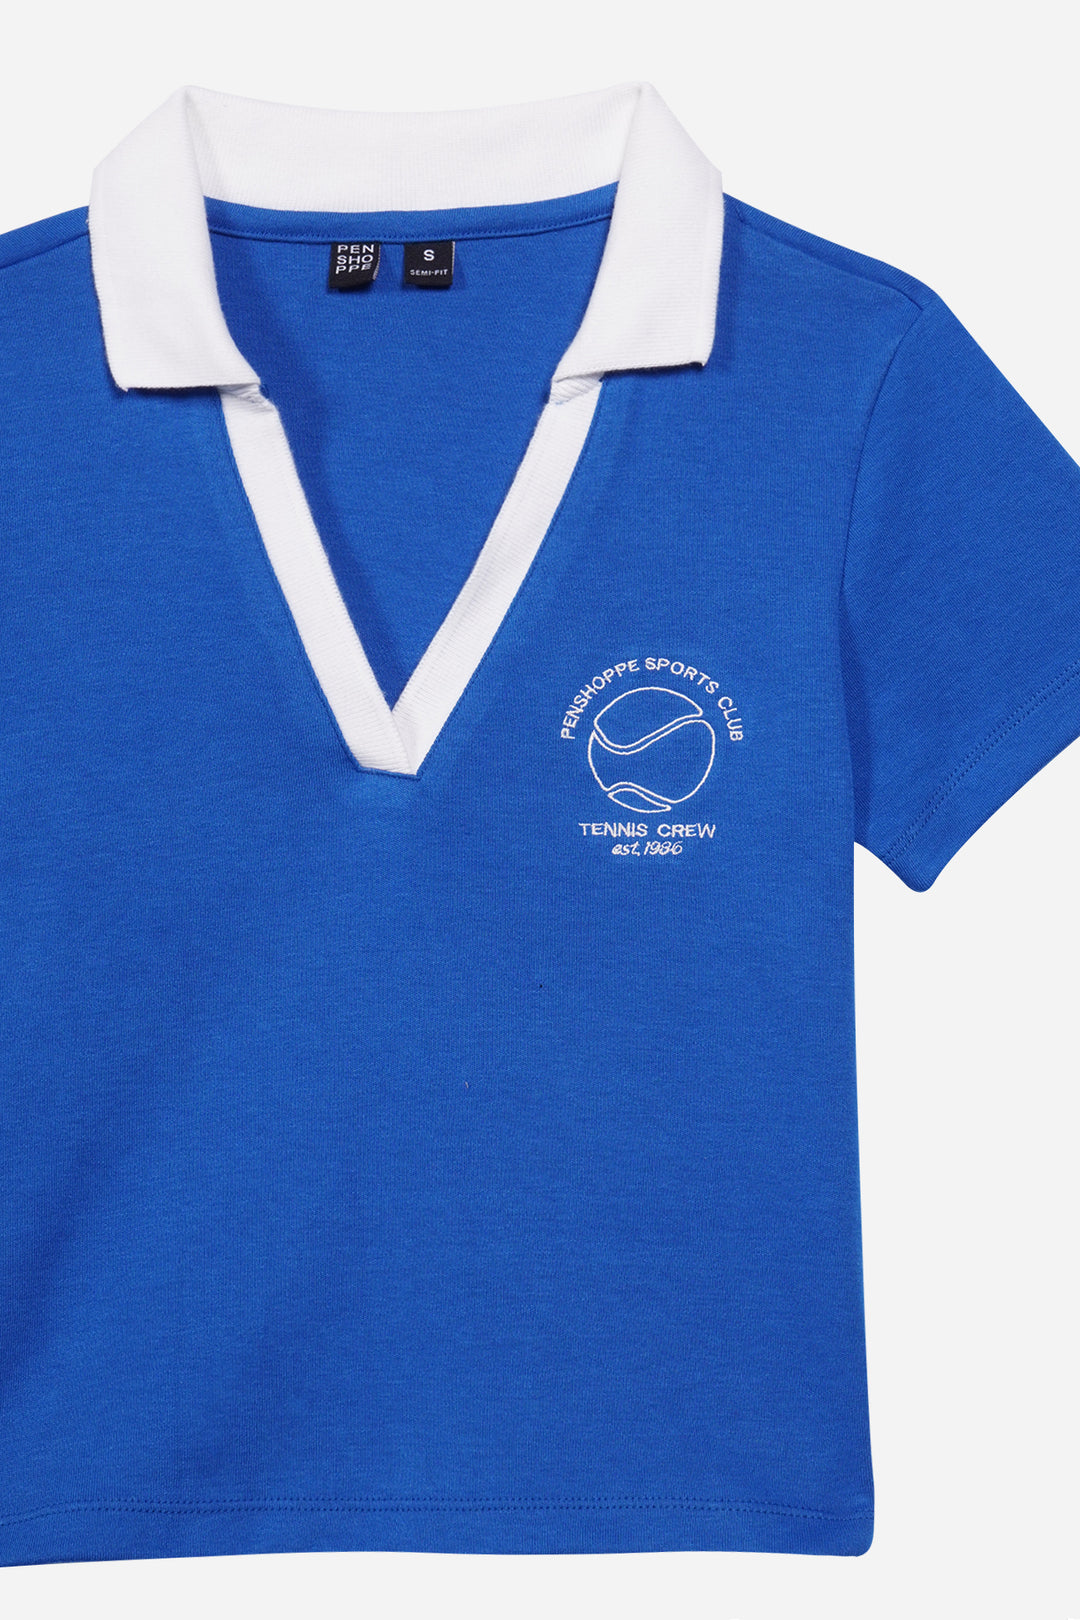 Interval Polo - Navy - FINAL SALE - XL  Perfect shirt, Senita athletics,  Polo